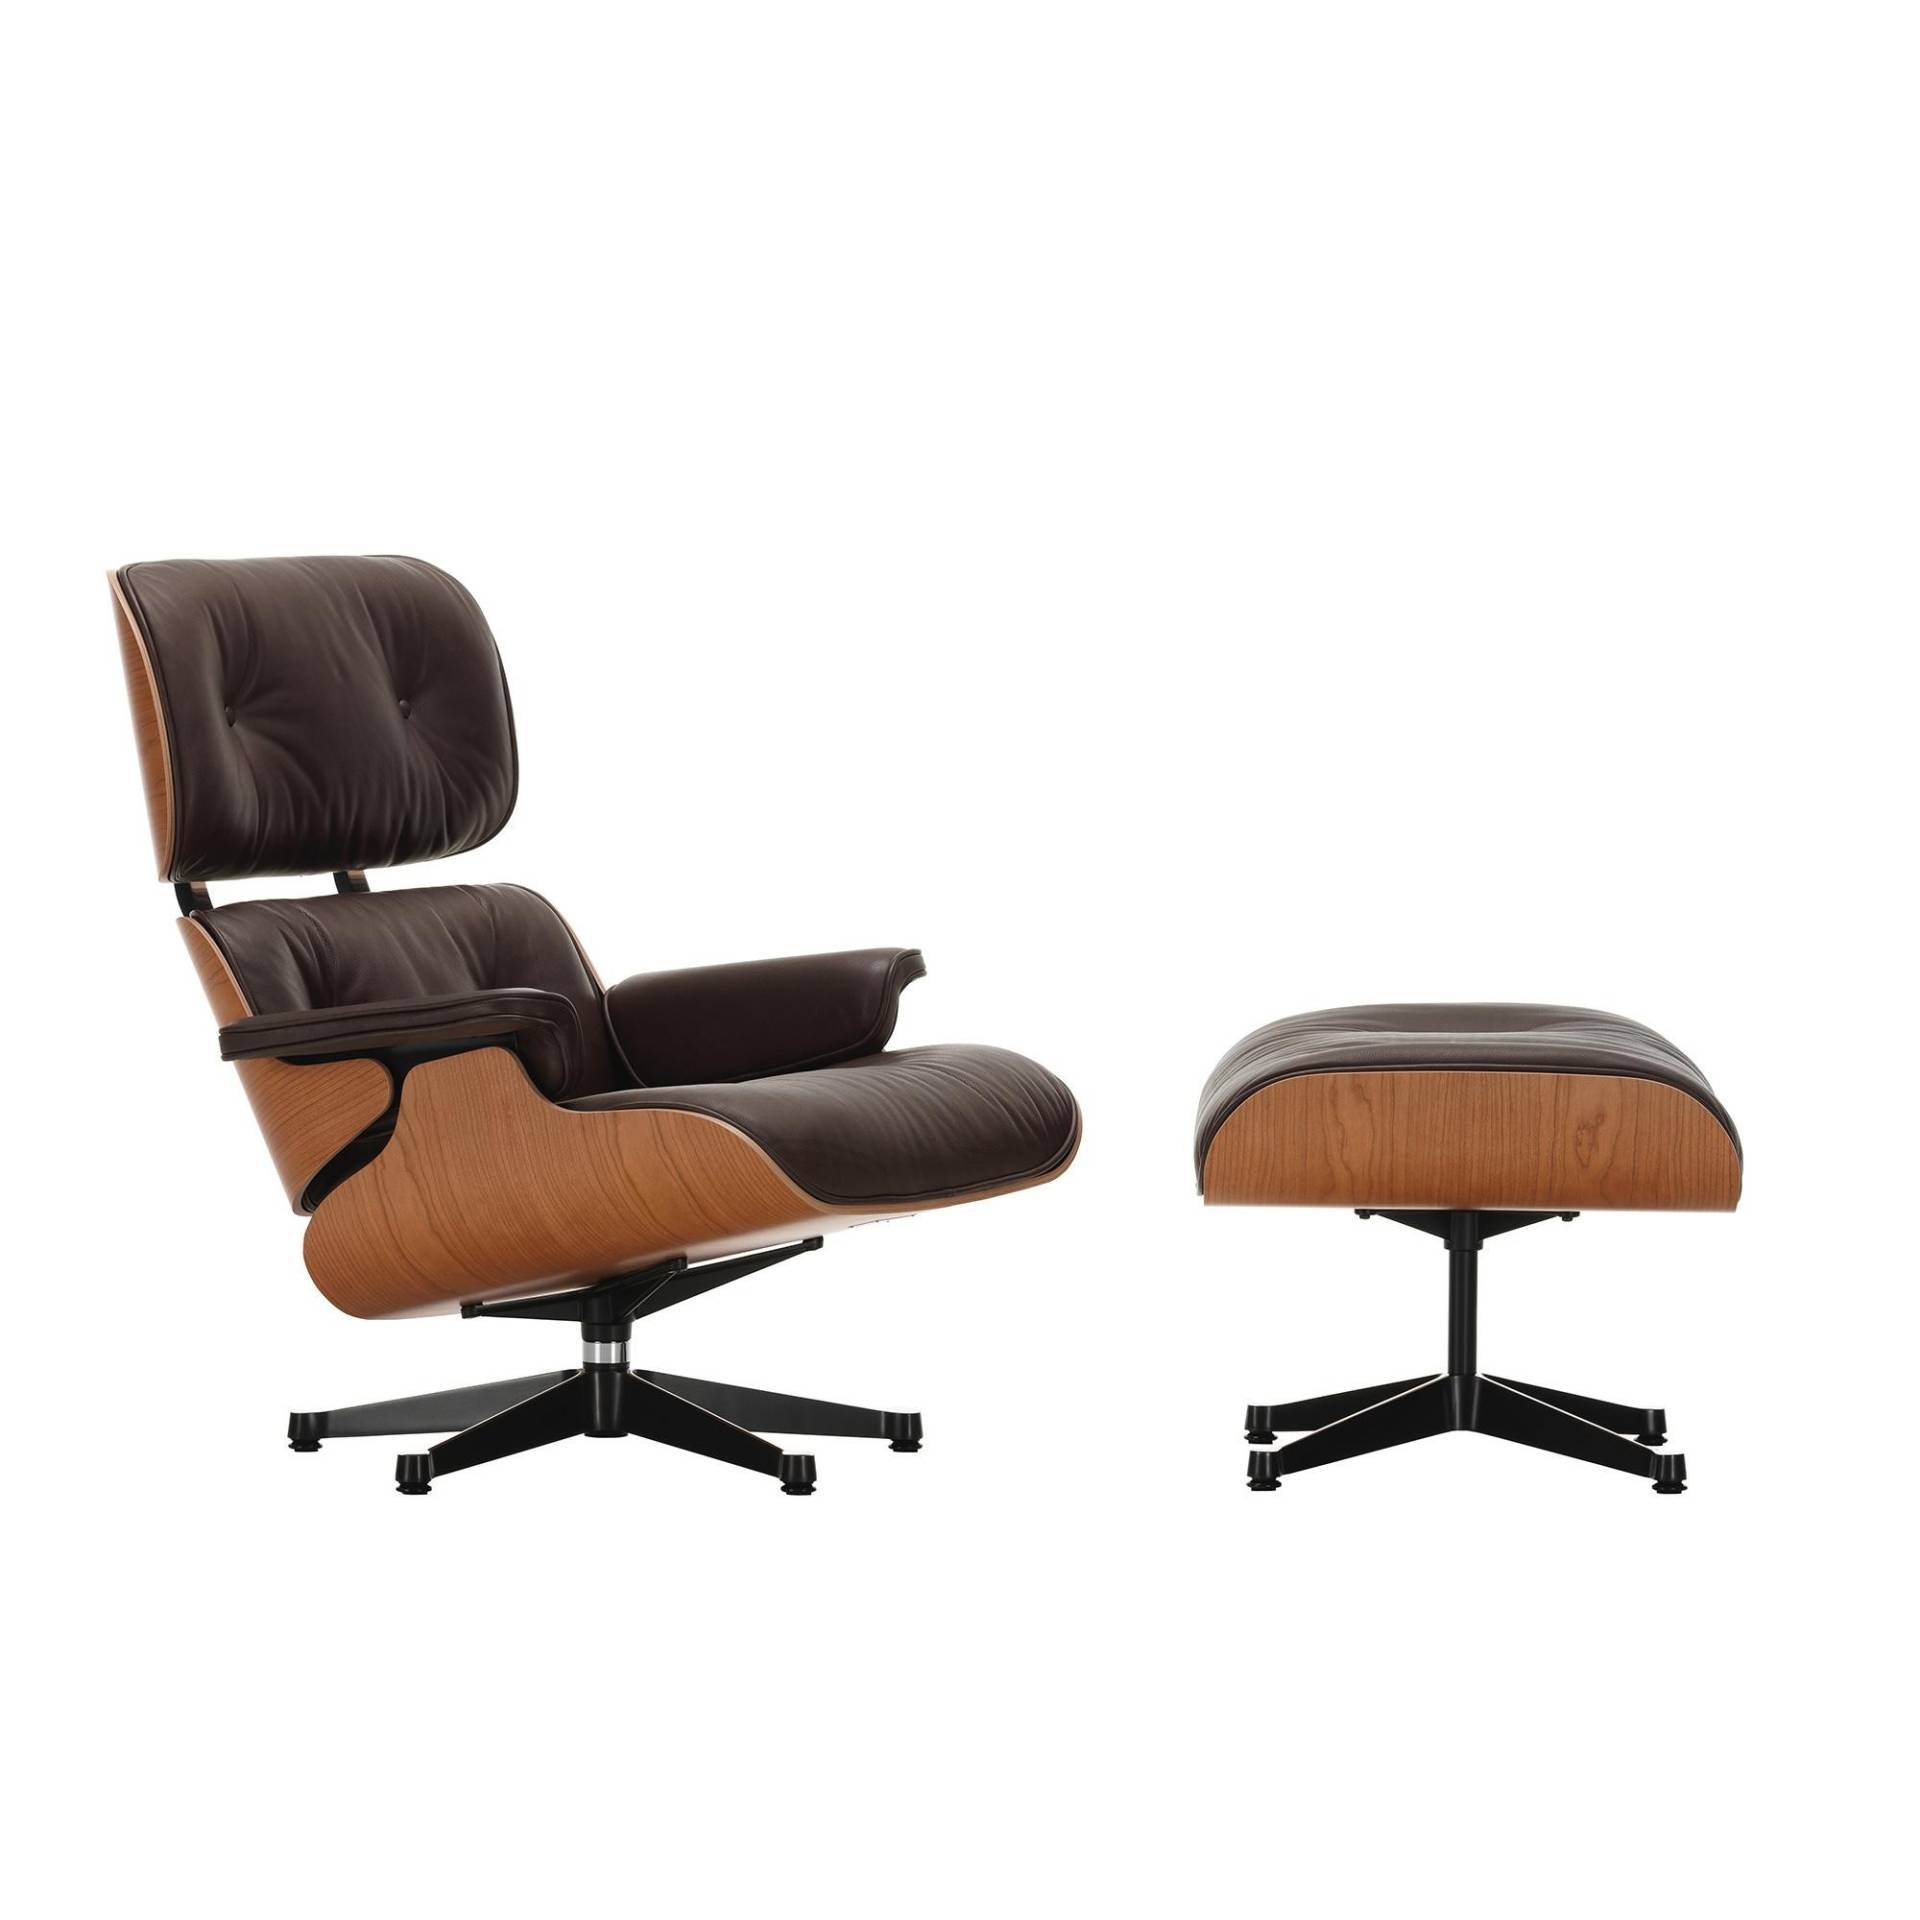 Vitra - Eames Lounge Chair Sessel & Ottoman - chocolate/Sitzfläche Leder Natural 68/Schale amerikanischer Kirschbaum/Gestell poliert schwarz von Vitra